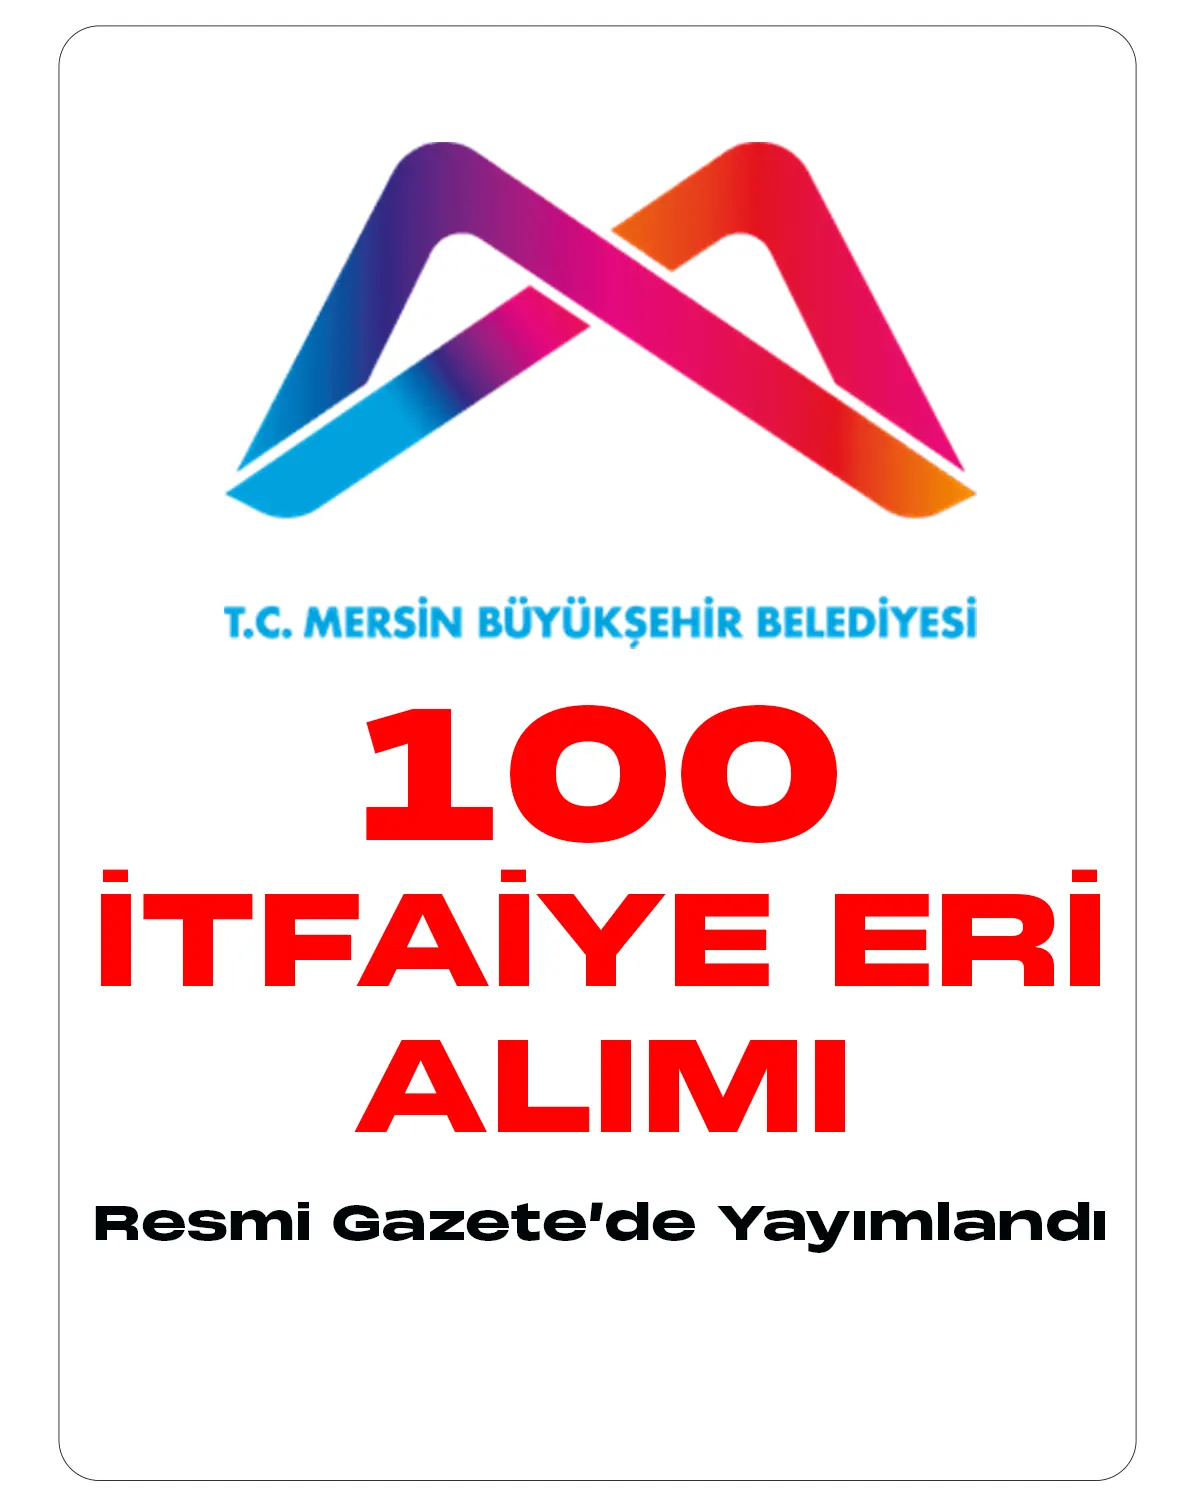 Mersin Büyükşehir Belediyesi itfaiye eri alımı ilanı Resmi Gazete'de yayımlandı.